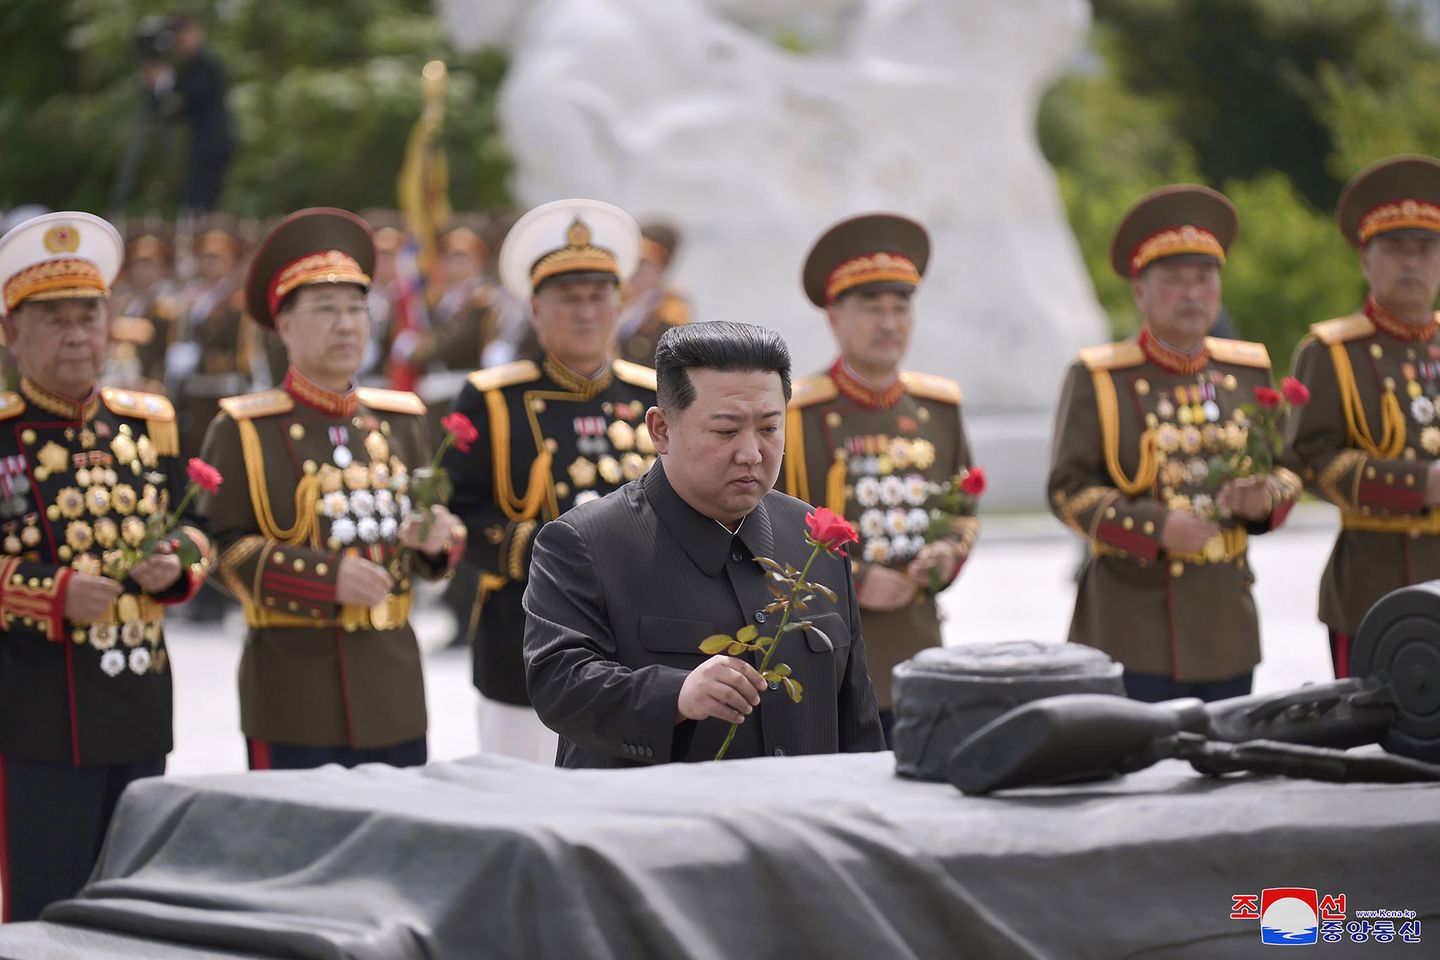 Kuzey Kore lideri Kim Jong-un, çatışma çıkarsa ABD ve Güney Kore'yi nükleer saldırılarla tehdit ediyor